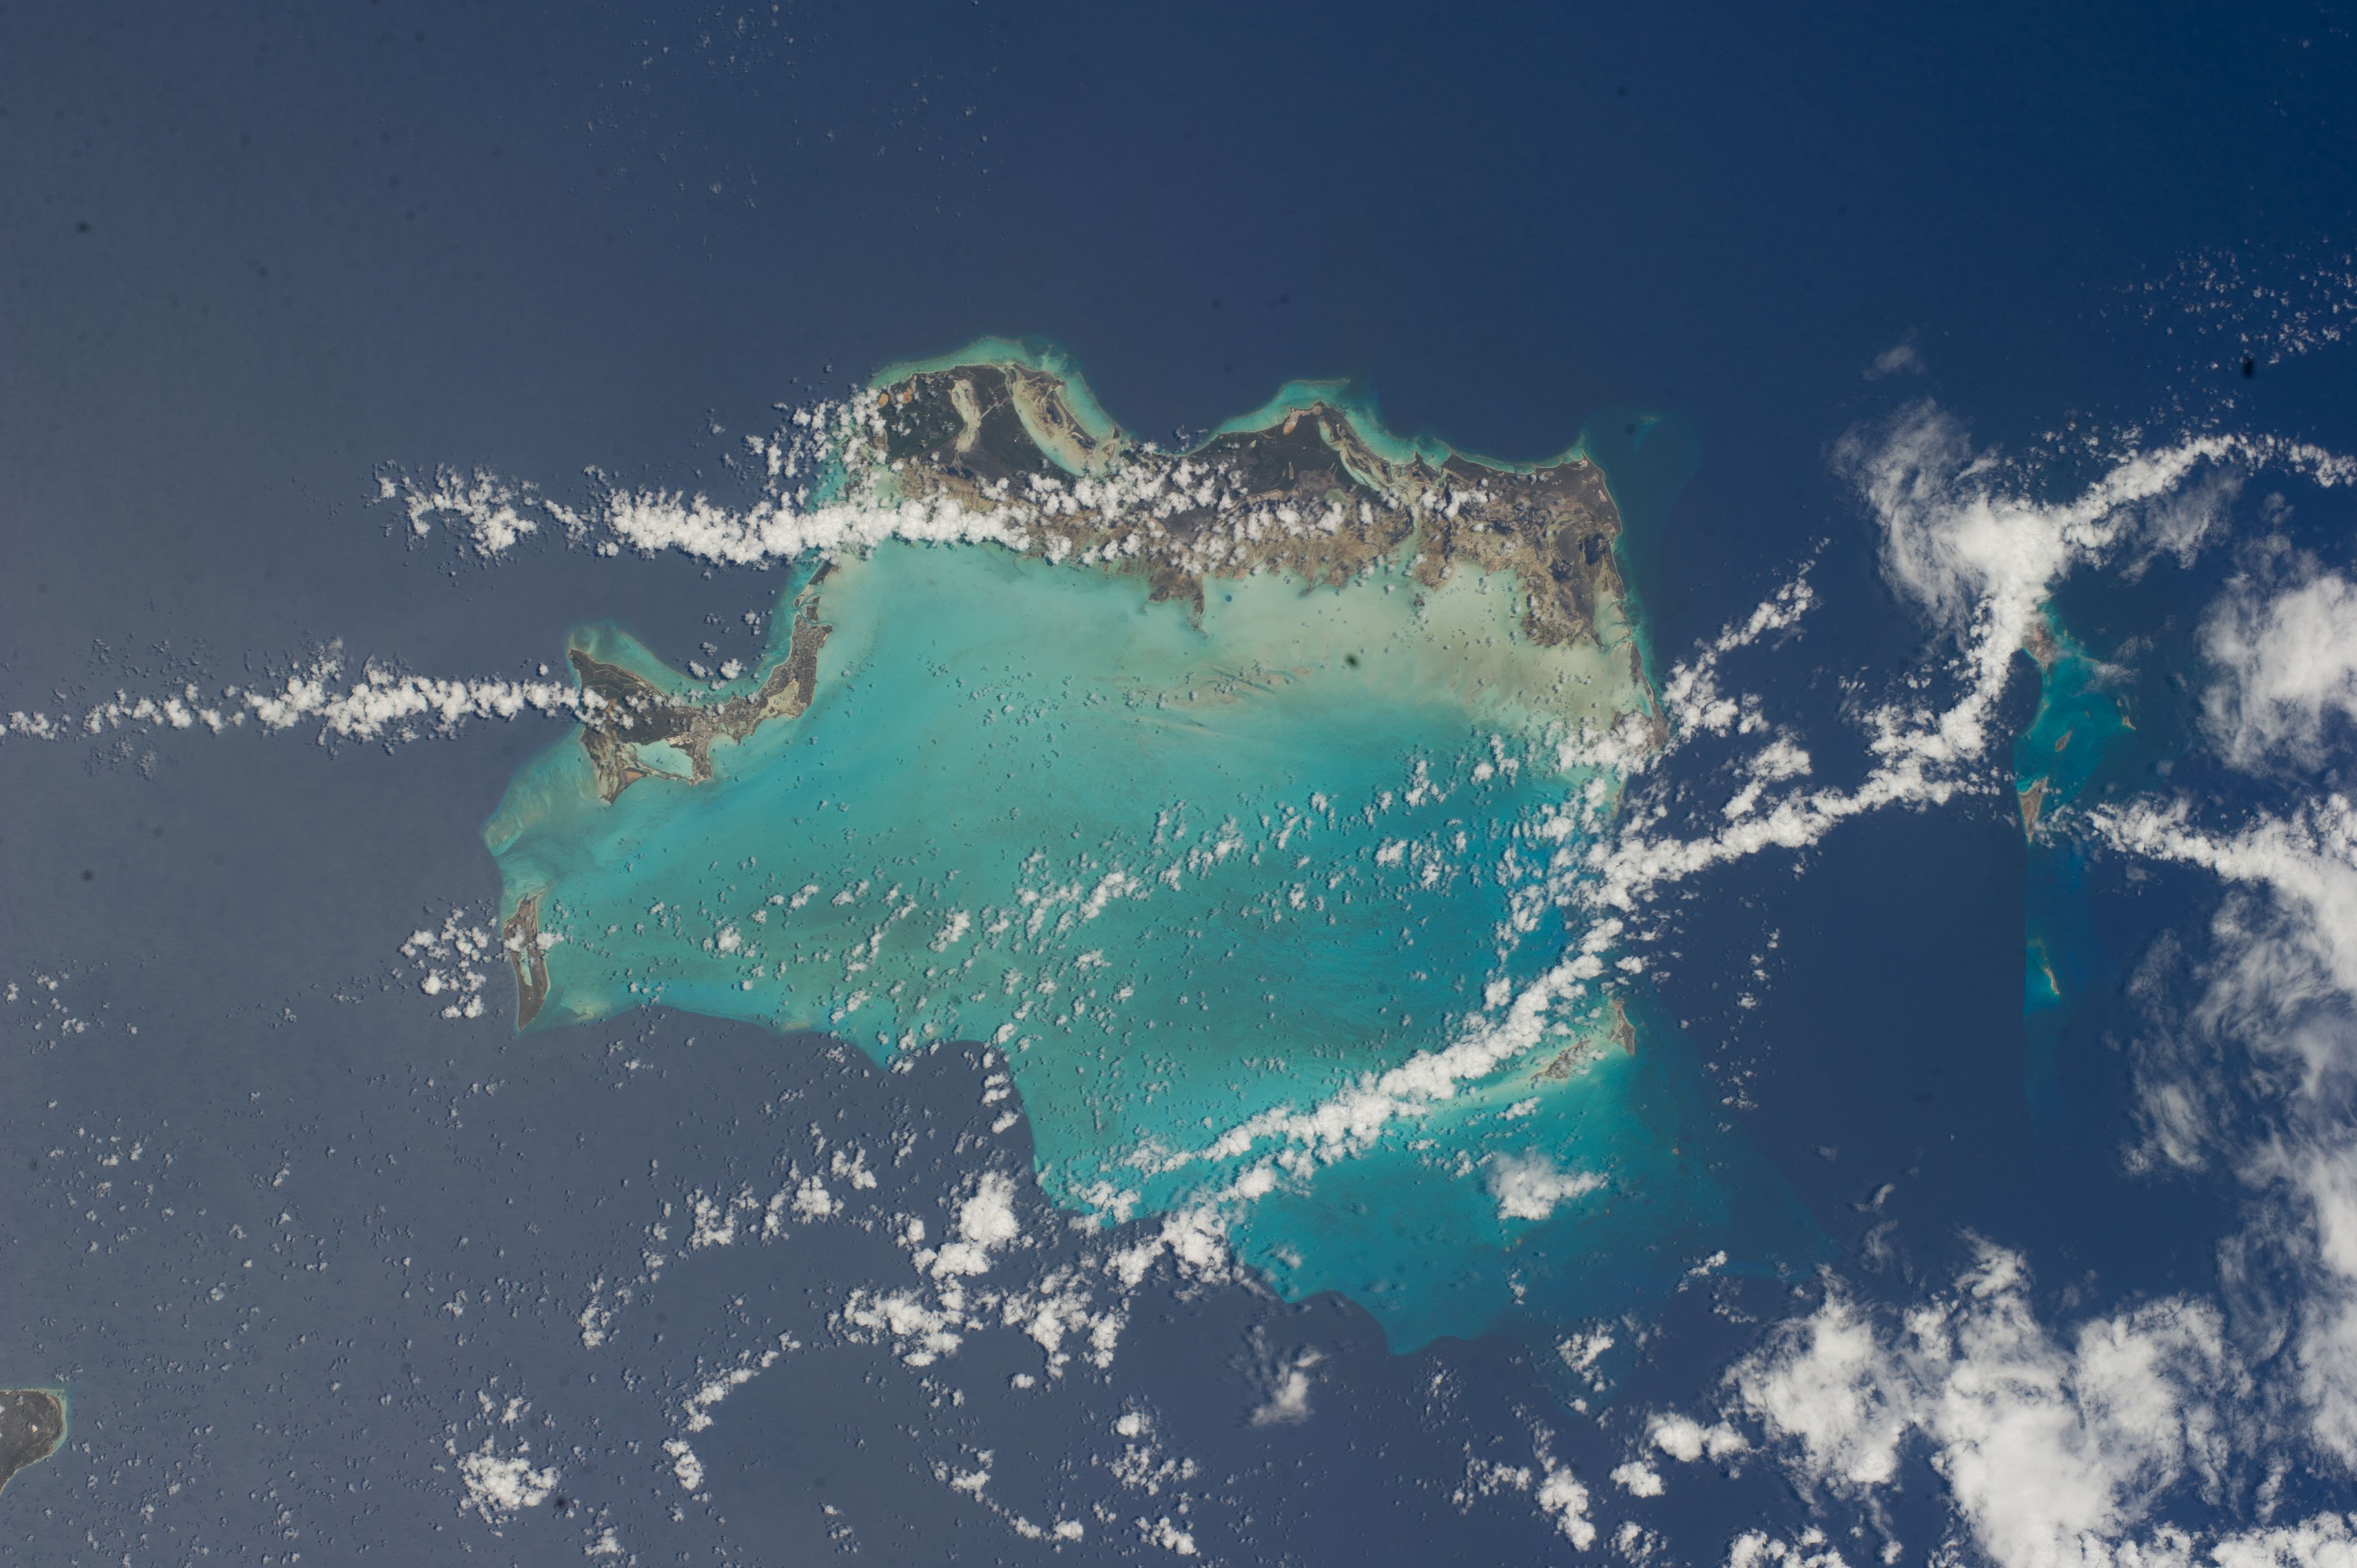 Стена в тихом океане. Каймановские острова Карибское море. Снимок из космоса остров Ямайка. Атлантический океан Карибы. Карибское море Бермудский треугольник.